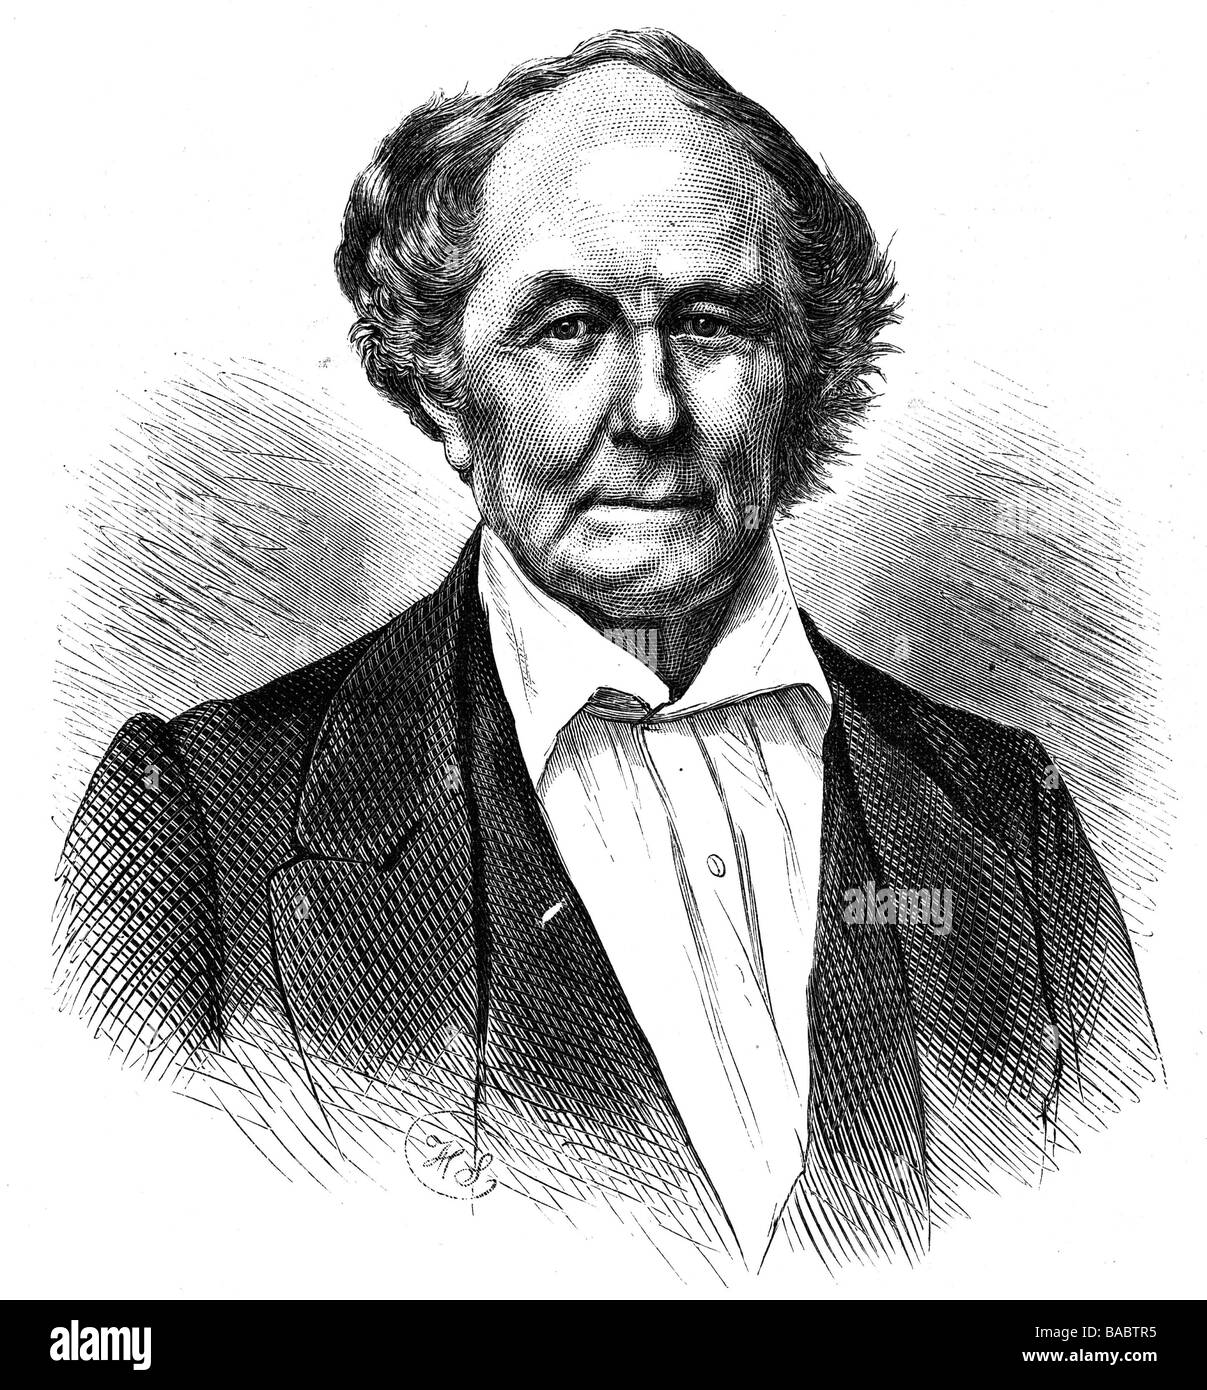 Argelander, Friedrich, 22.3.1799 - 17.2.1875, German scientist (astronom), portrait, wood engraving, 1875, Stock Photo